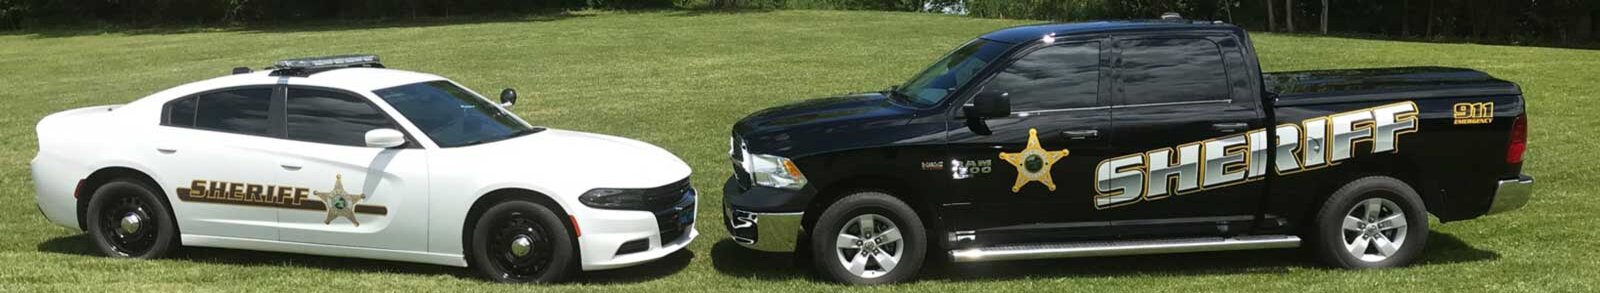 Washington County Sheriff Vehicles